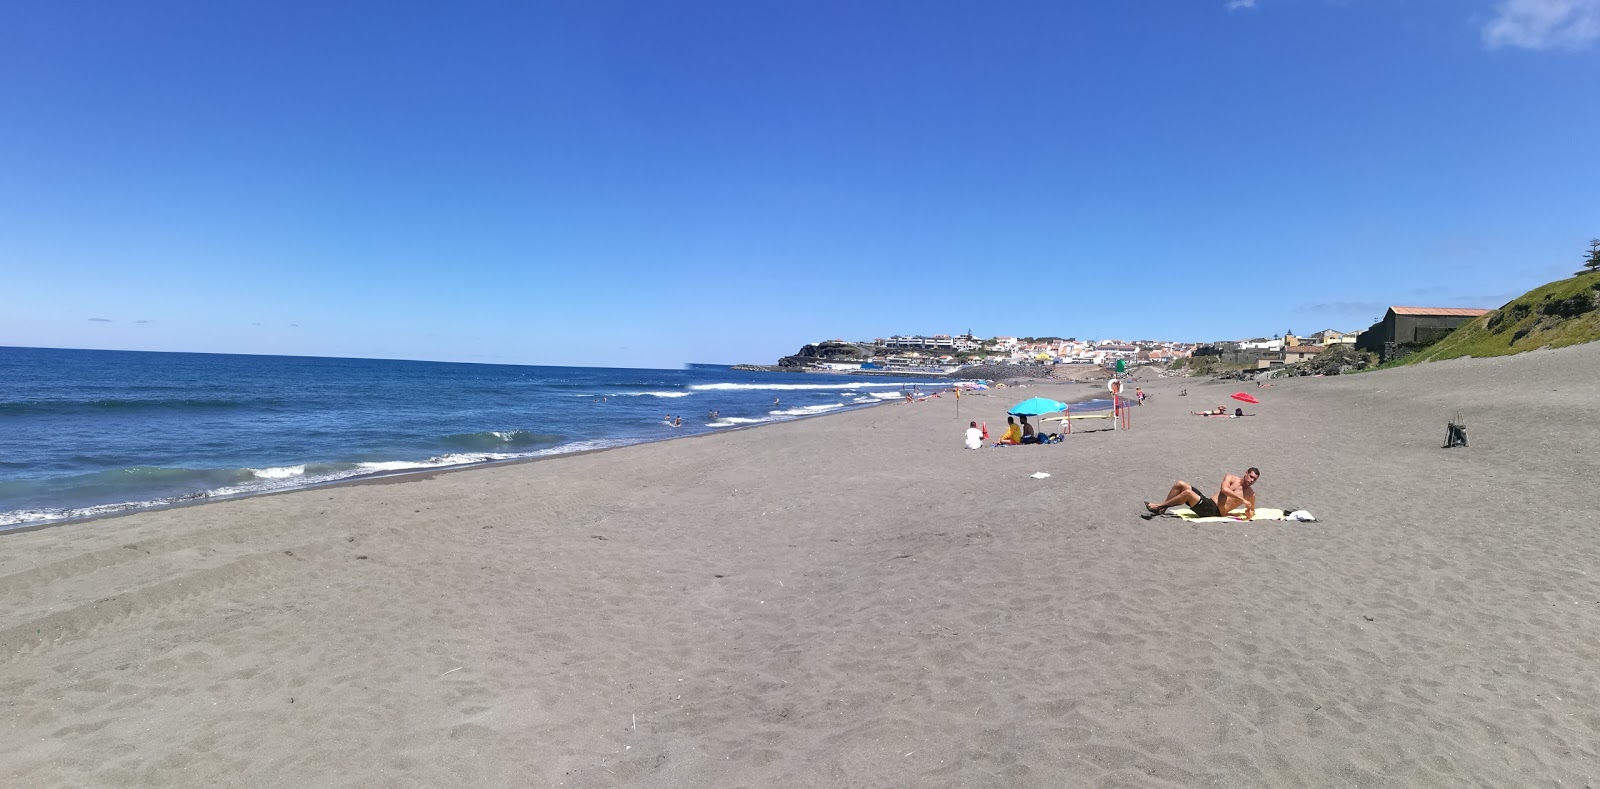 Praia do Monte Verde'in fotoğrafı gri kum yüzey ile